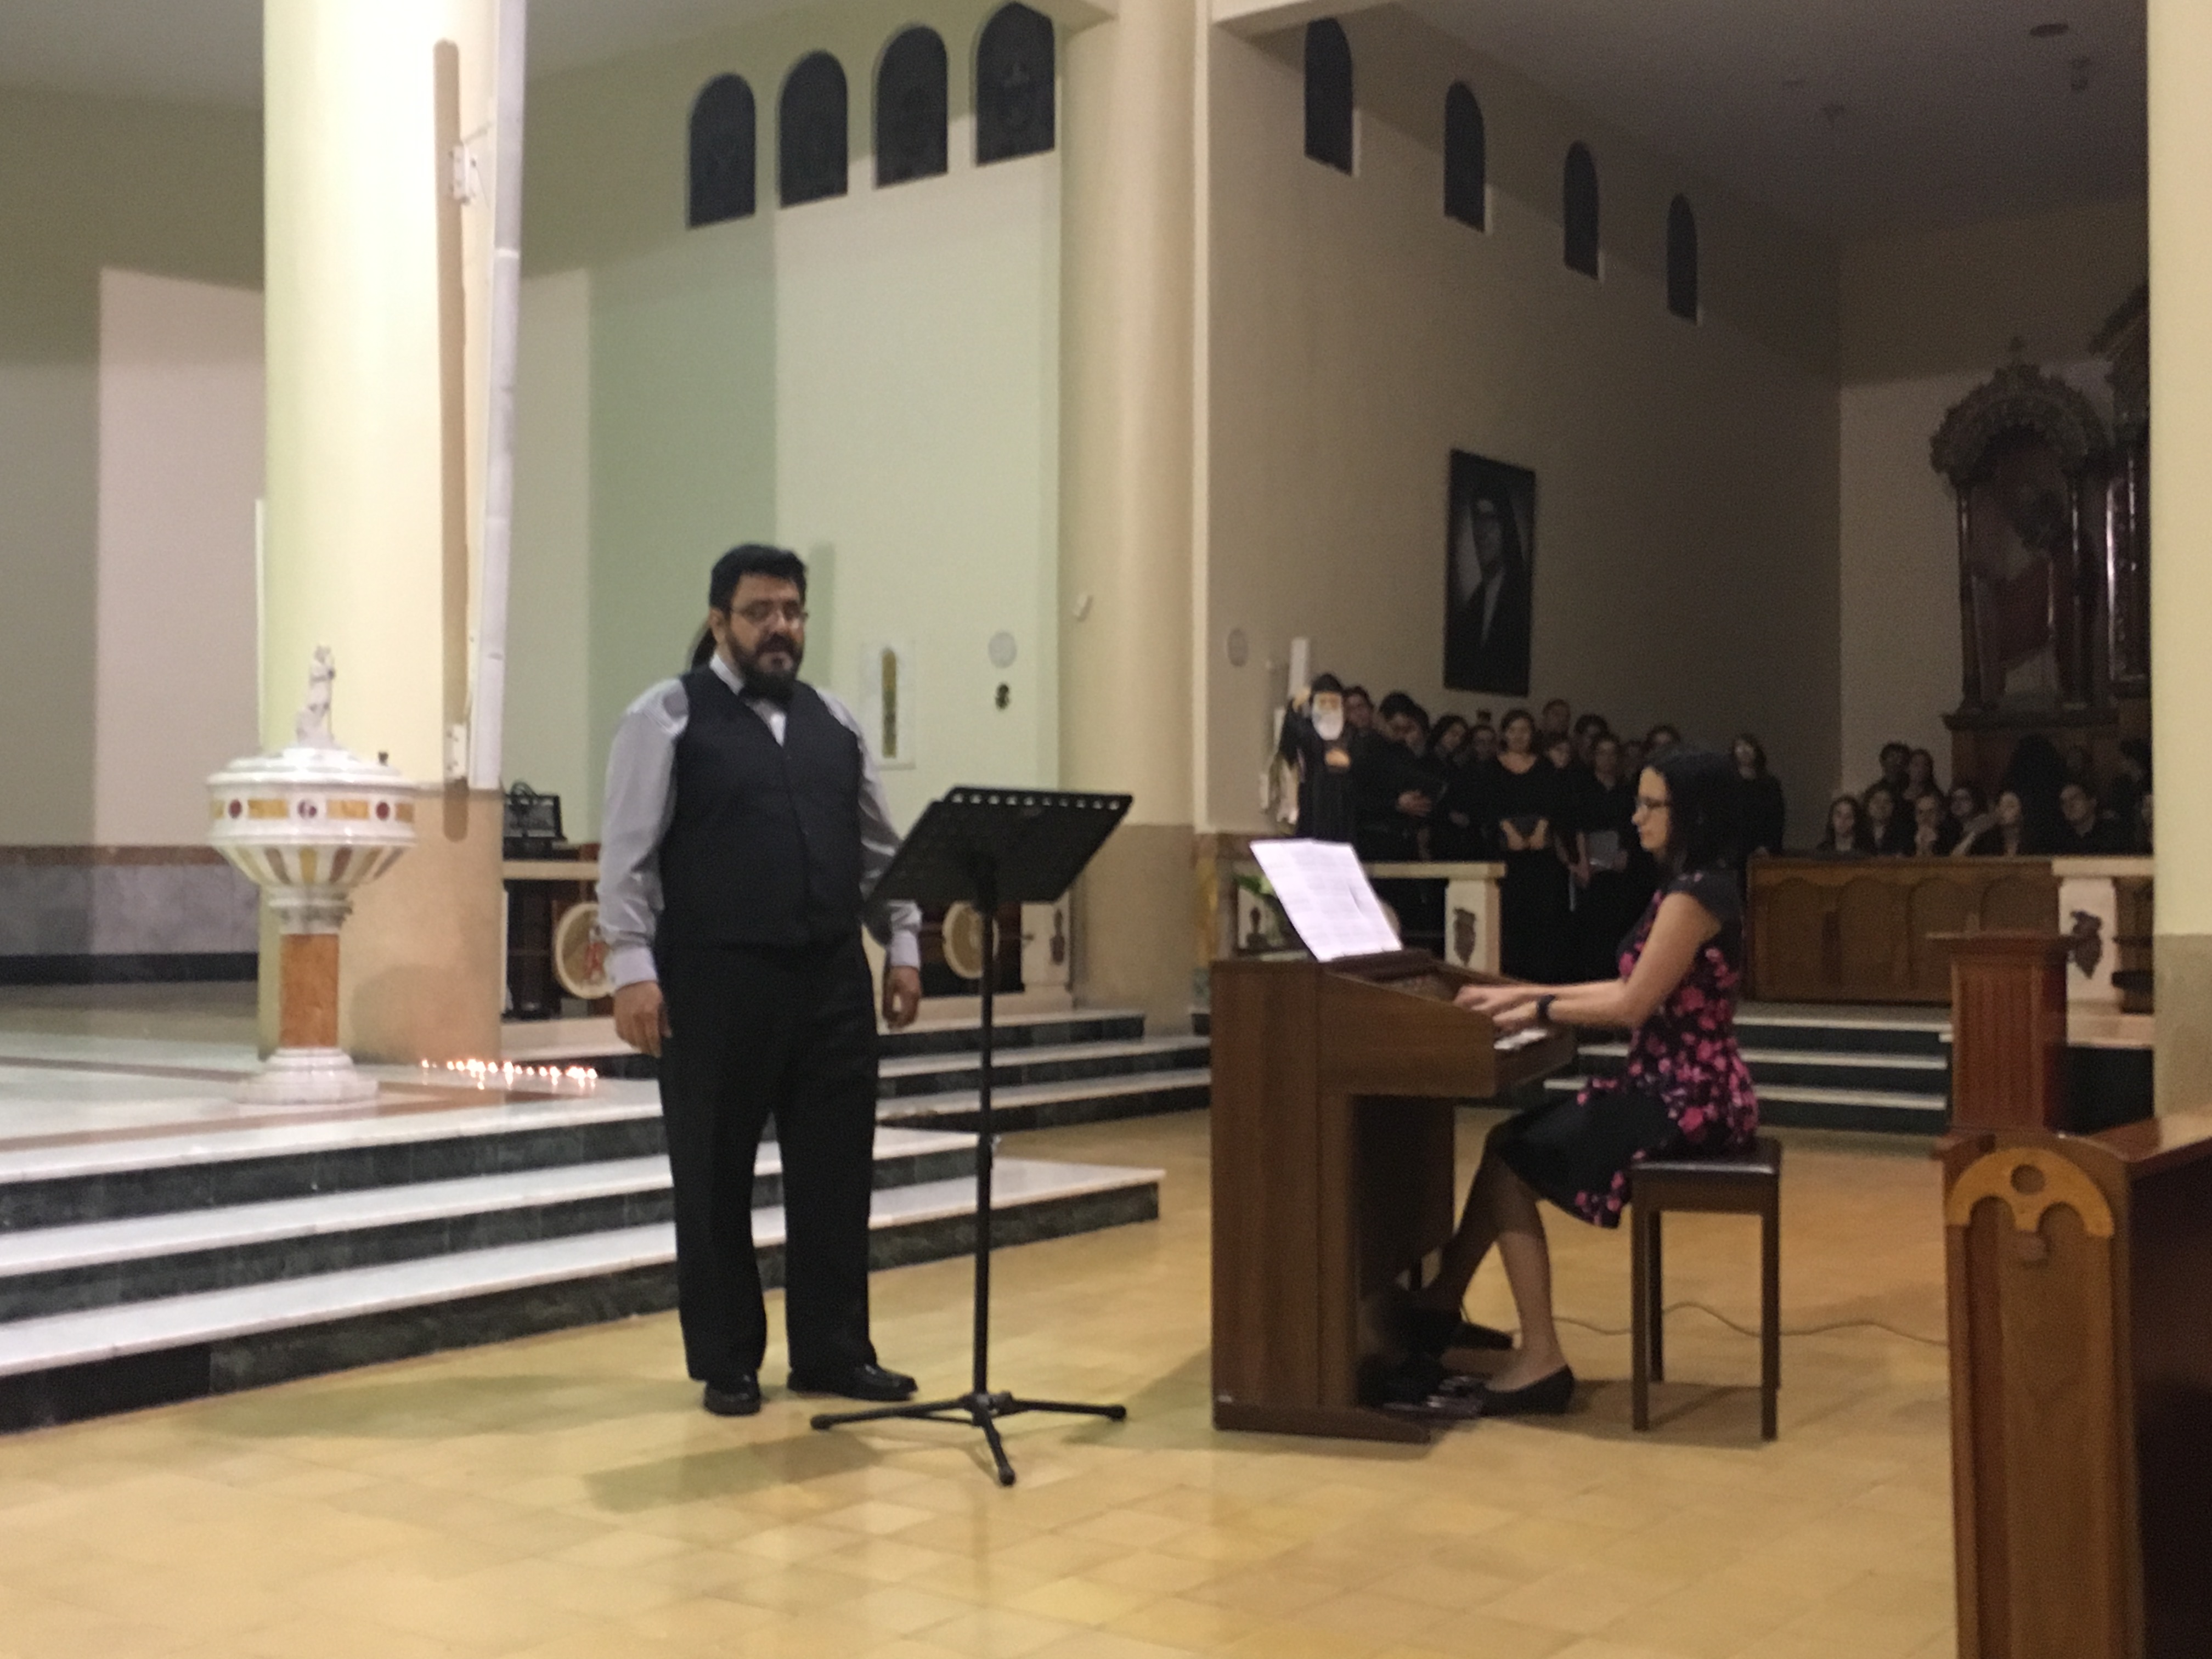 Un concierto de música sacra con el tenor Ernesto Rodríguez, Tanya Cordero al órgano  interpretaron distintas composiciones. Fotografía Annette Seas